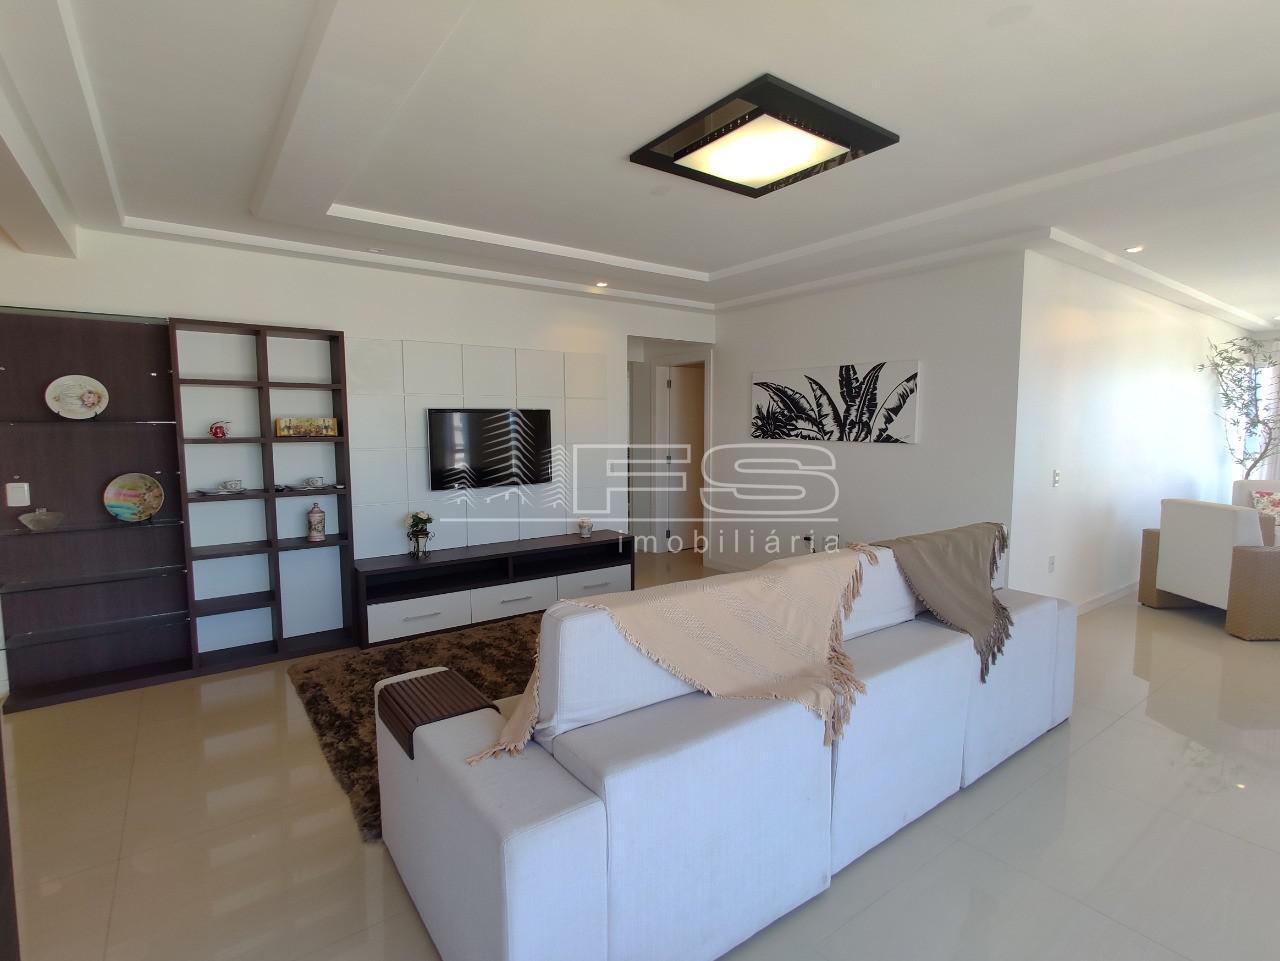 Apartamento com 4 Dormitórios à venda, 250 m² por R$ 2.200.000,00